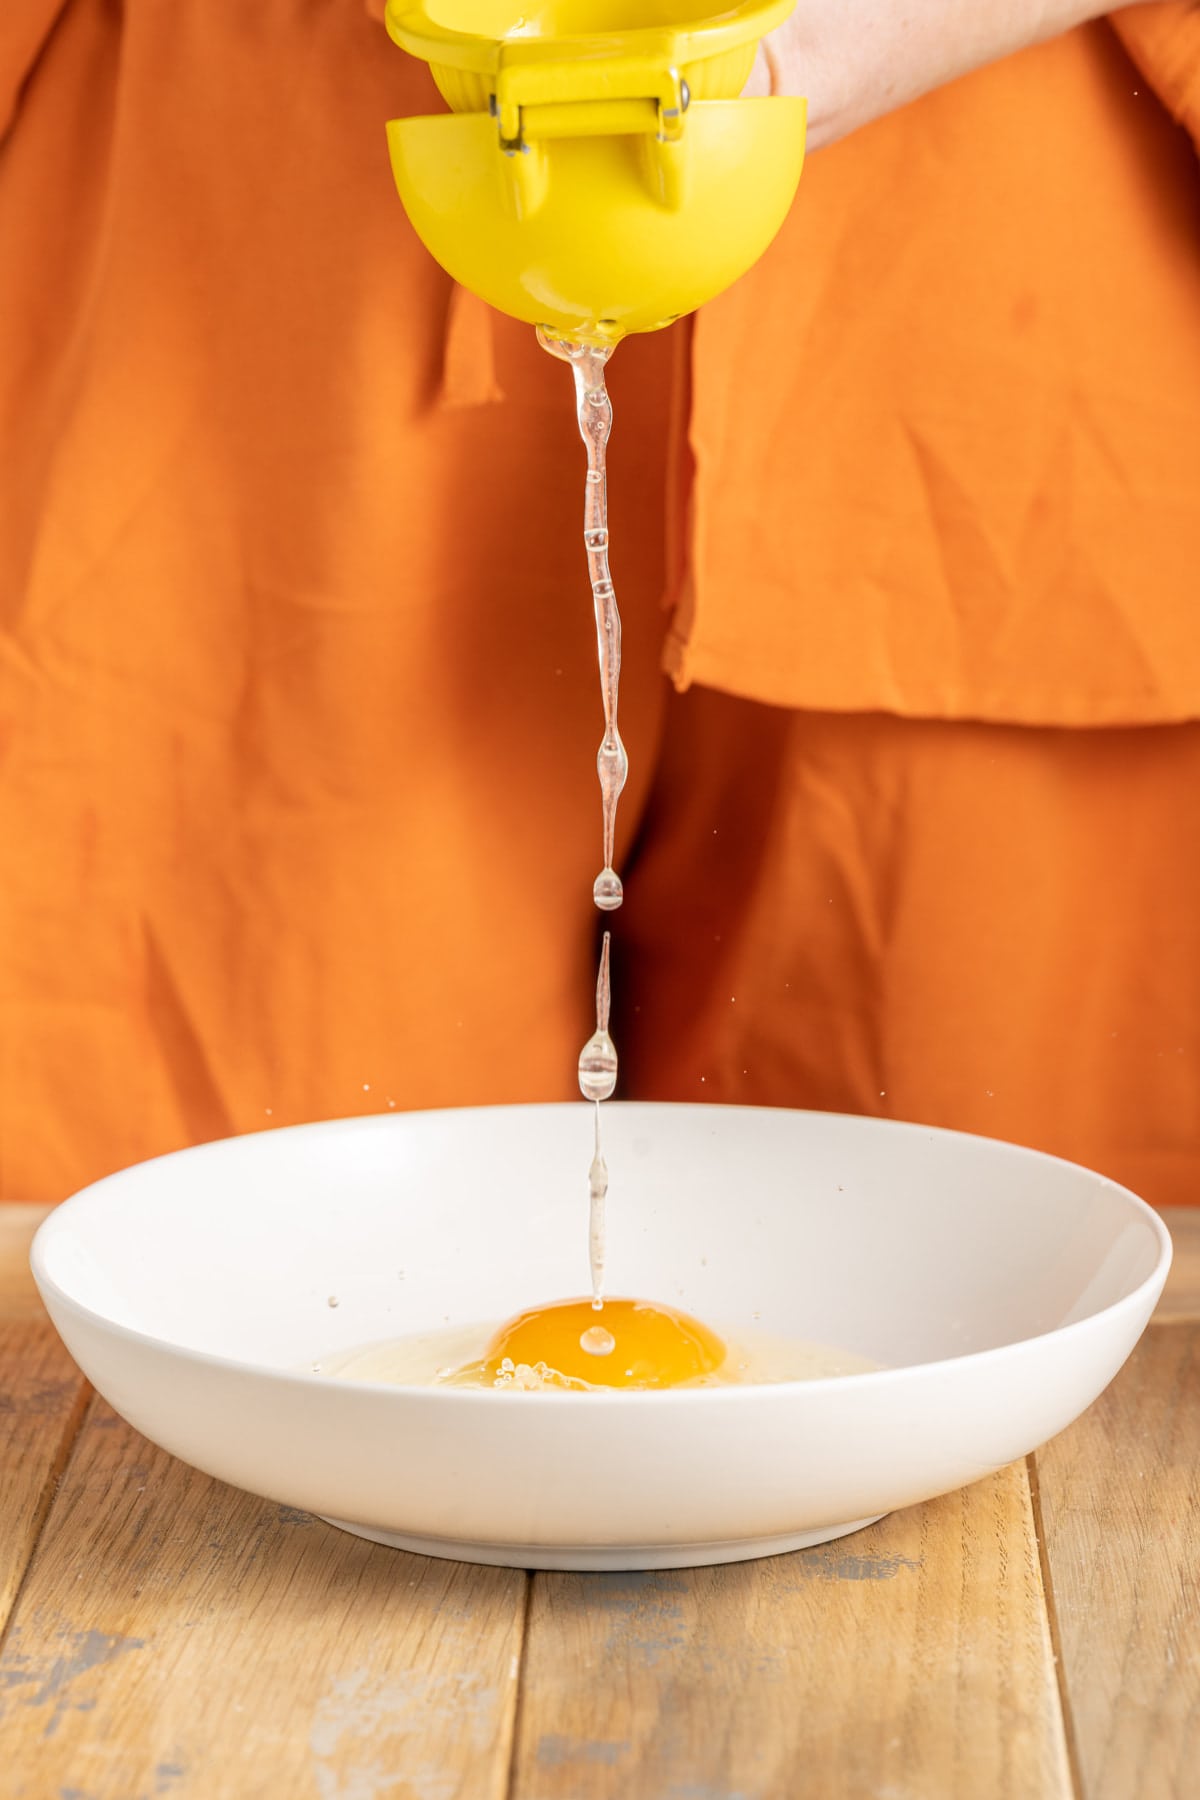 Adding fresh lemon juice to egg wash